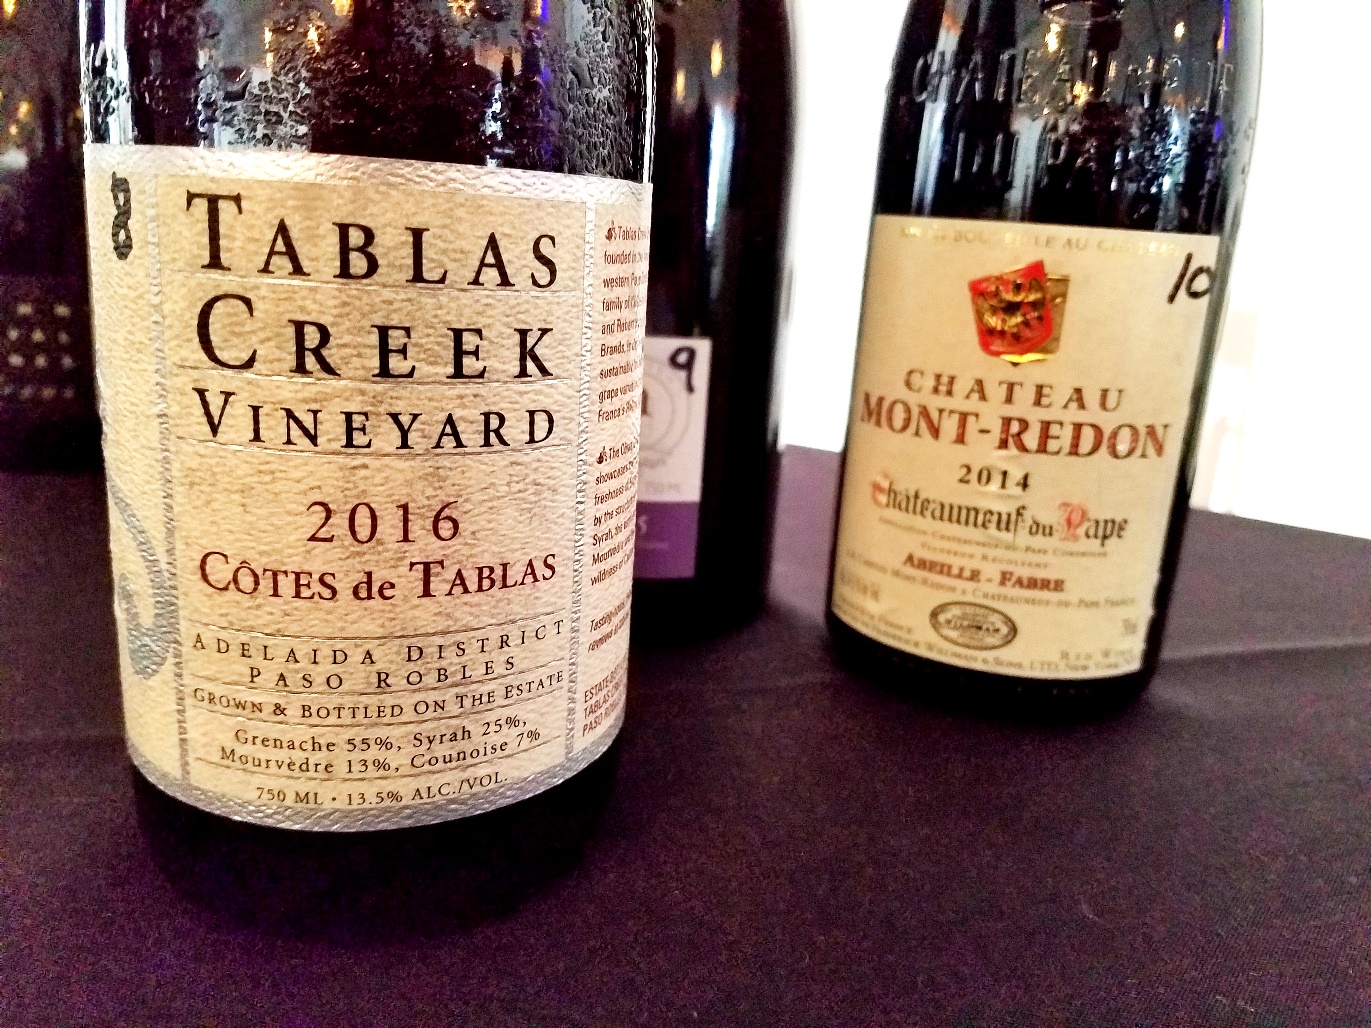 Tablas Creek Vineyard, Côtes de Tablas 2016, Paso Robles, California, Wine Casual